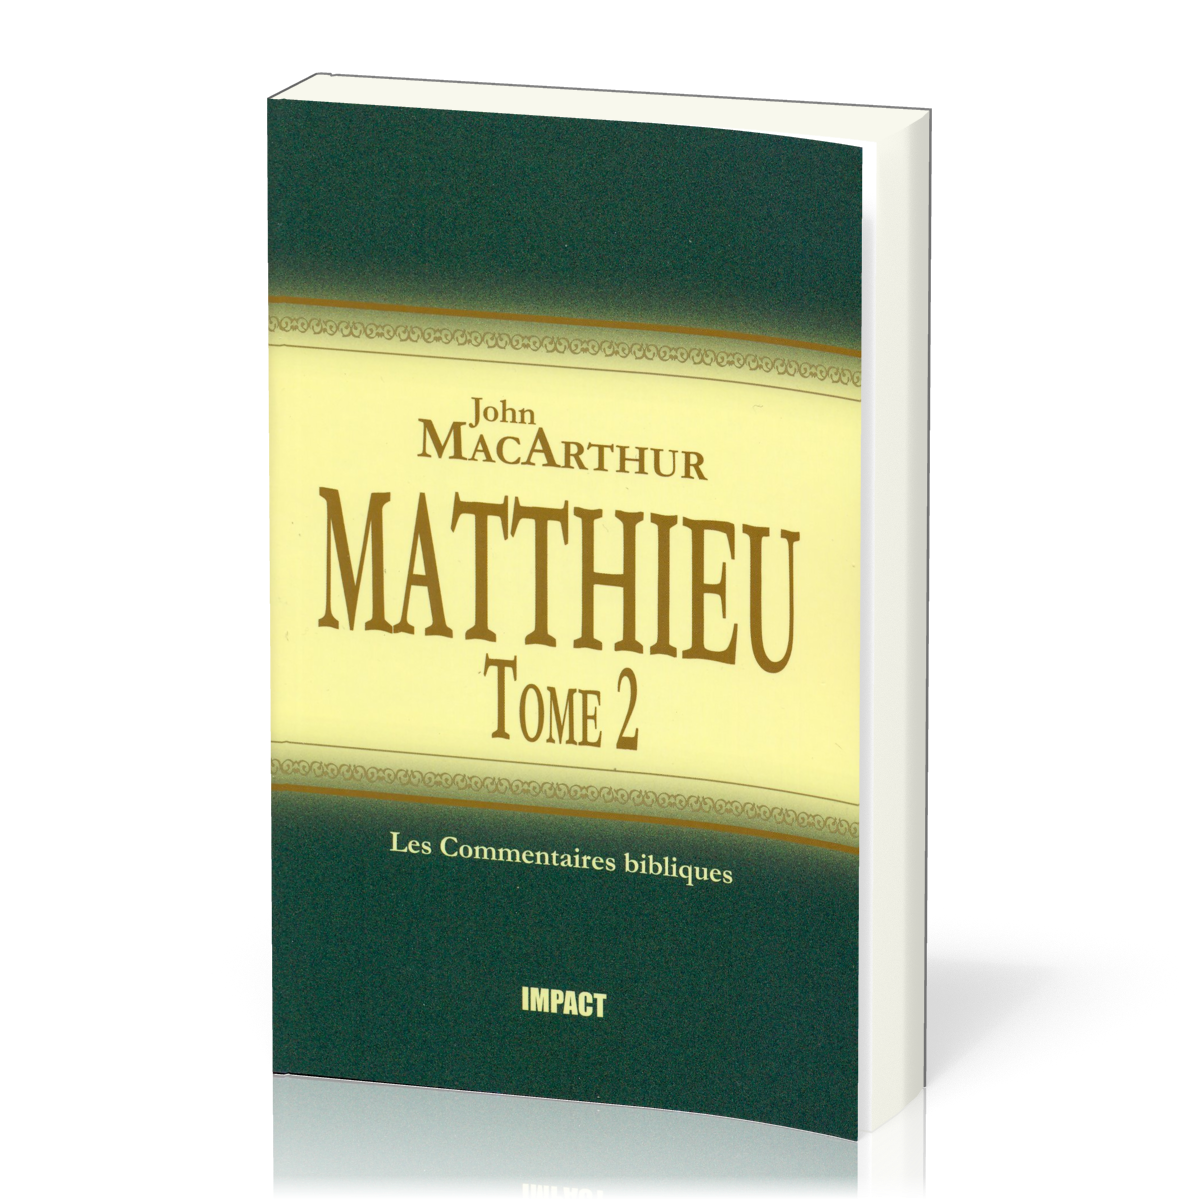 Matthieu - tome 2 (ch.8-15) [Les Commentaires bibliques]